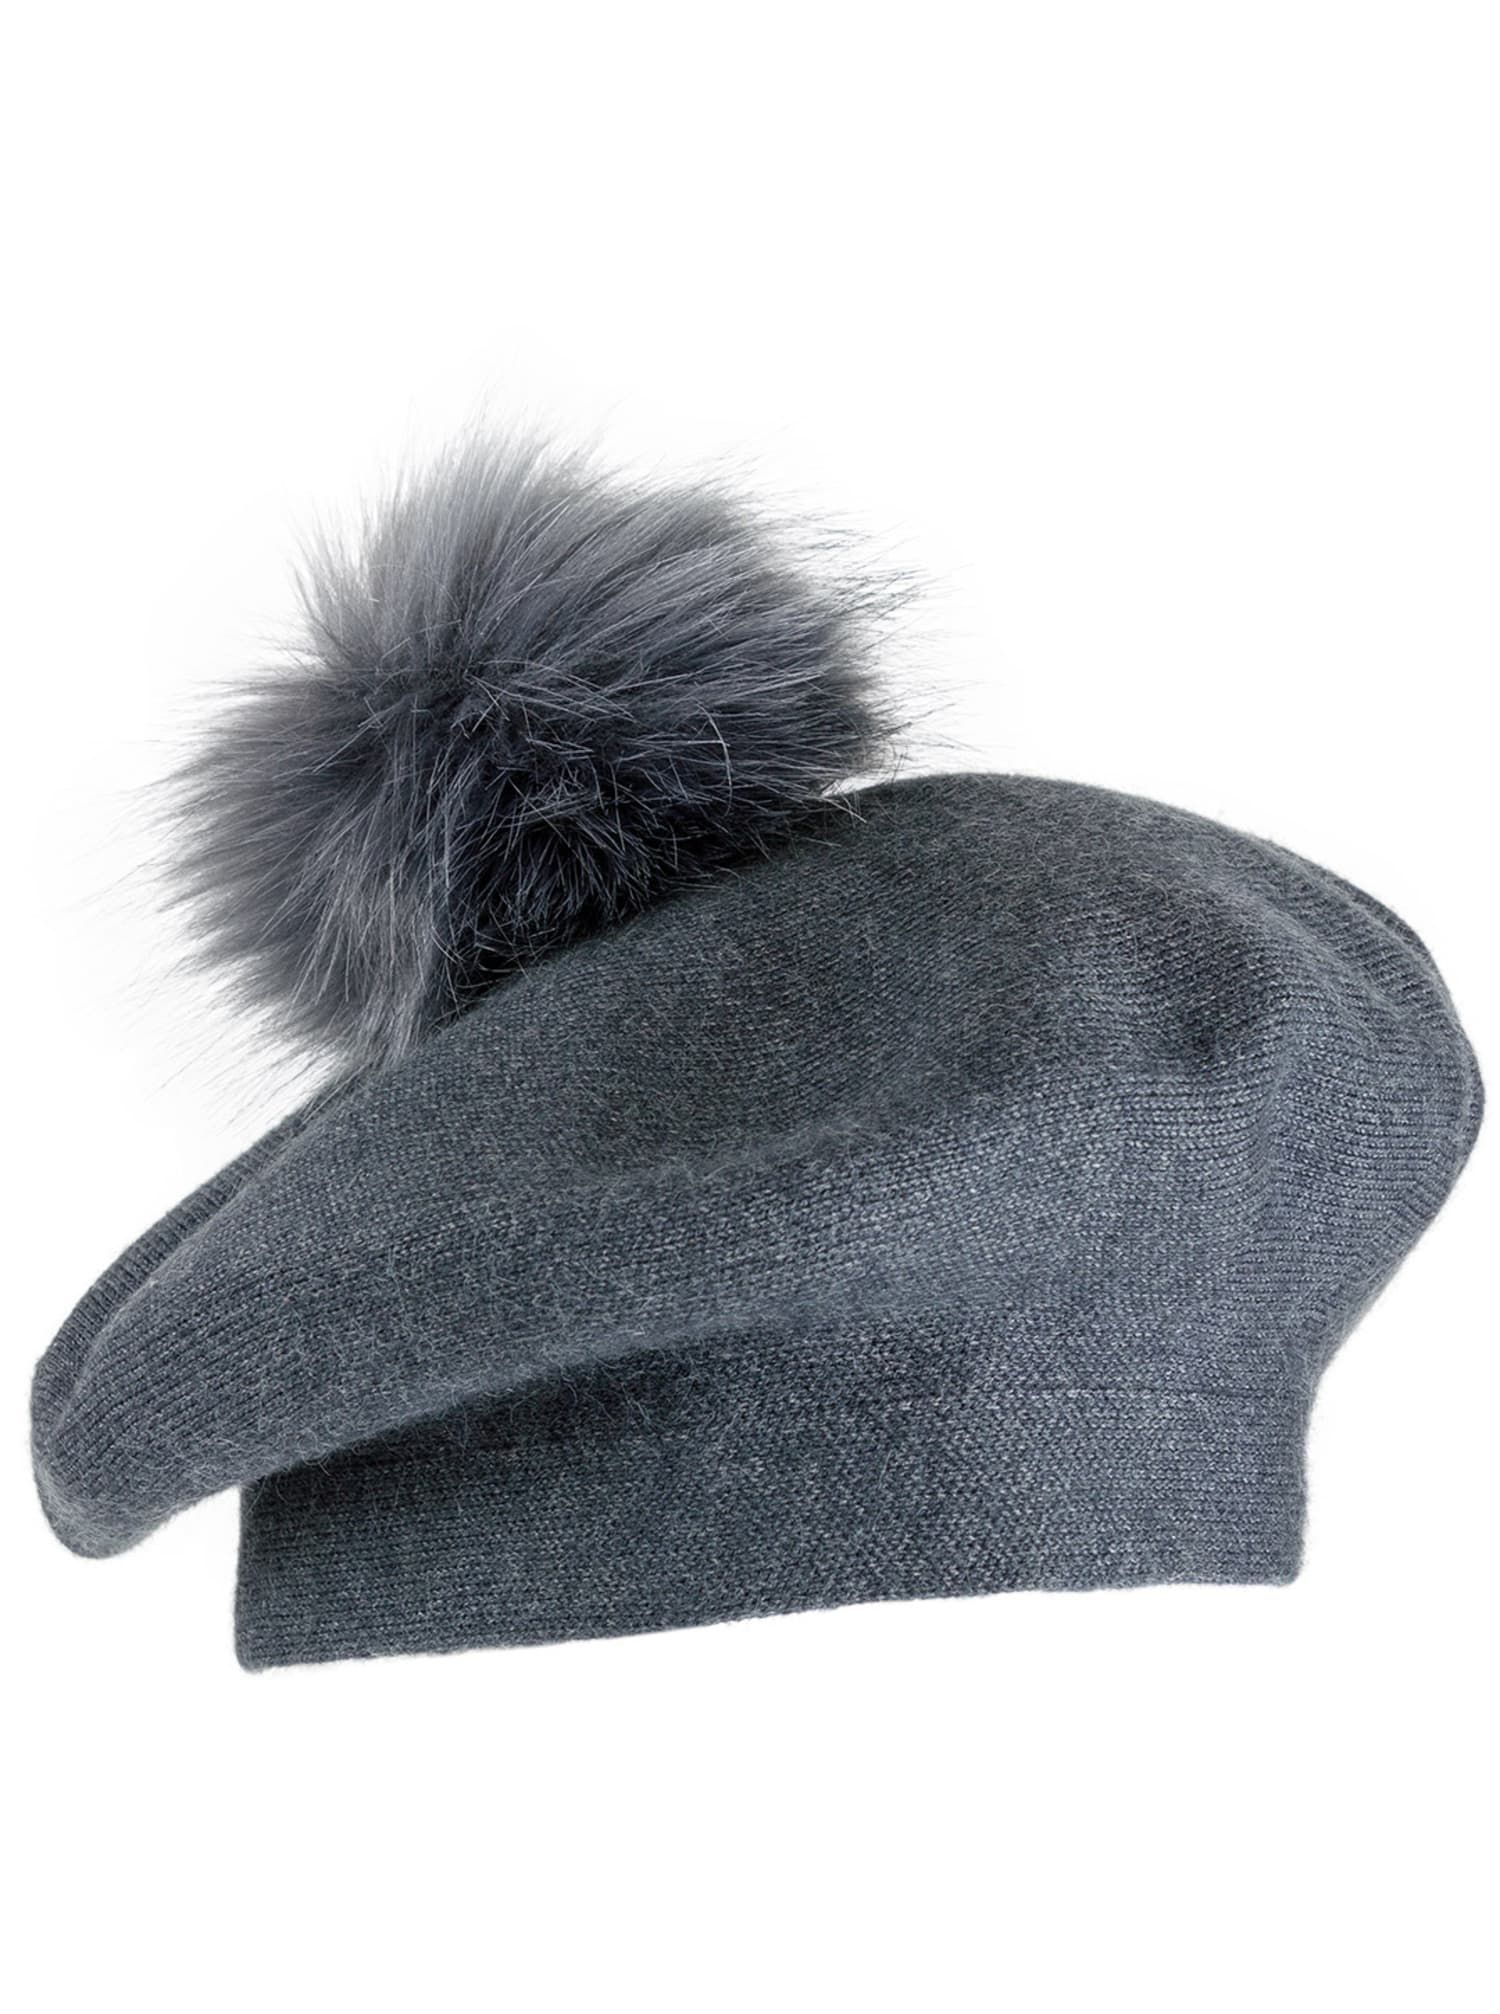 Jones New York Beret Hat With Faux Fur Pom Pom | Dressbarn